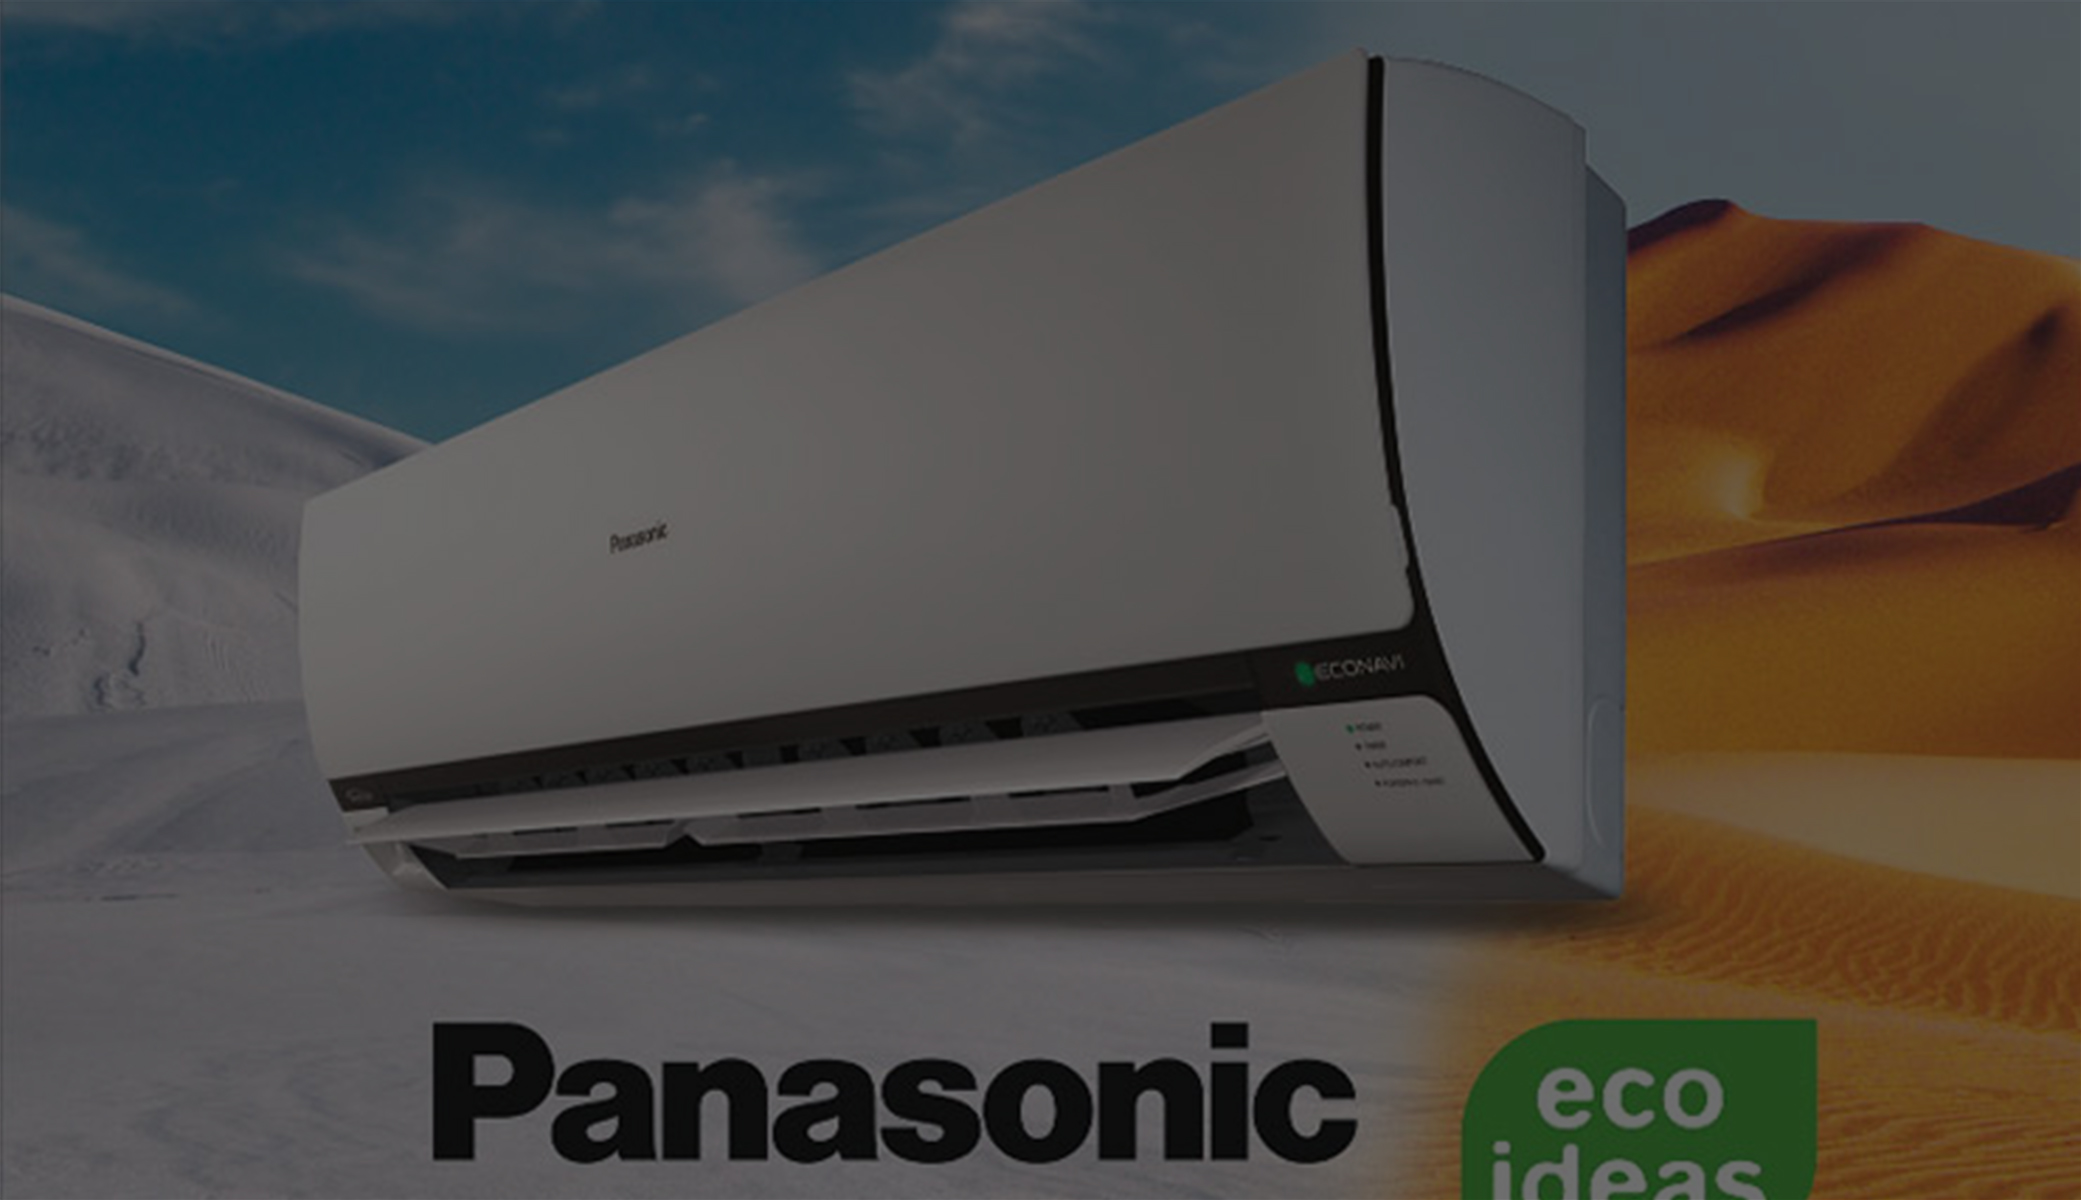 AC Dinding Merk Panasonic Gunakan Fitur Eco Navi, Sanggup Menghemat Listrik hingga 30 Persen